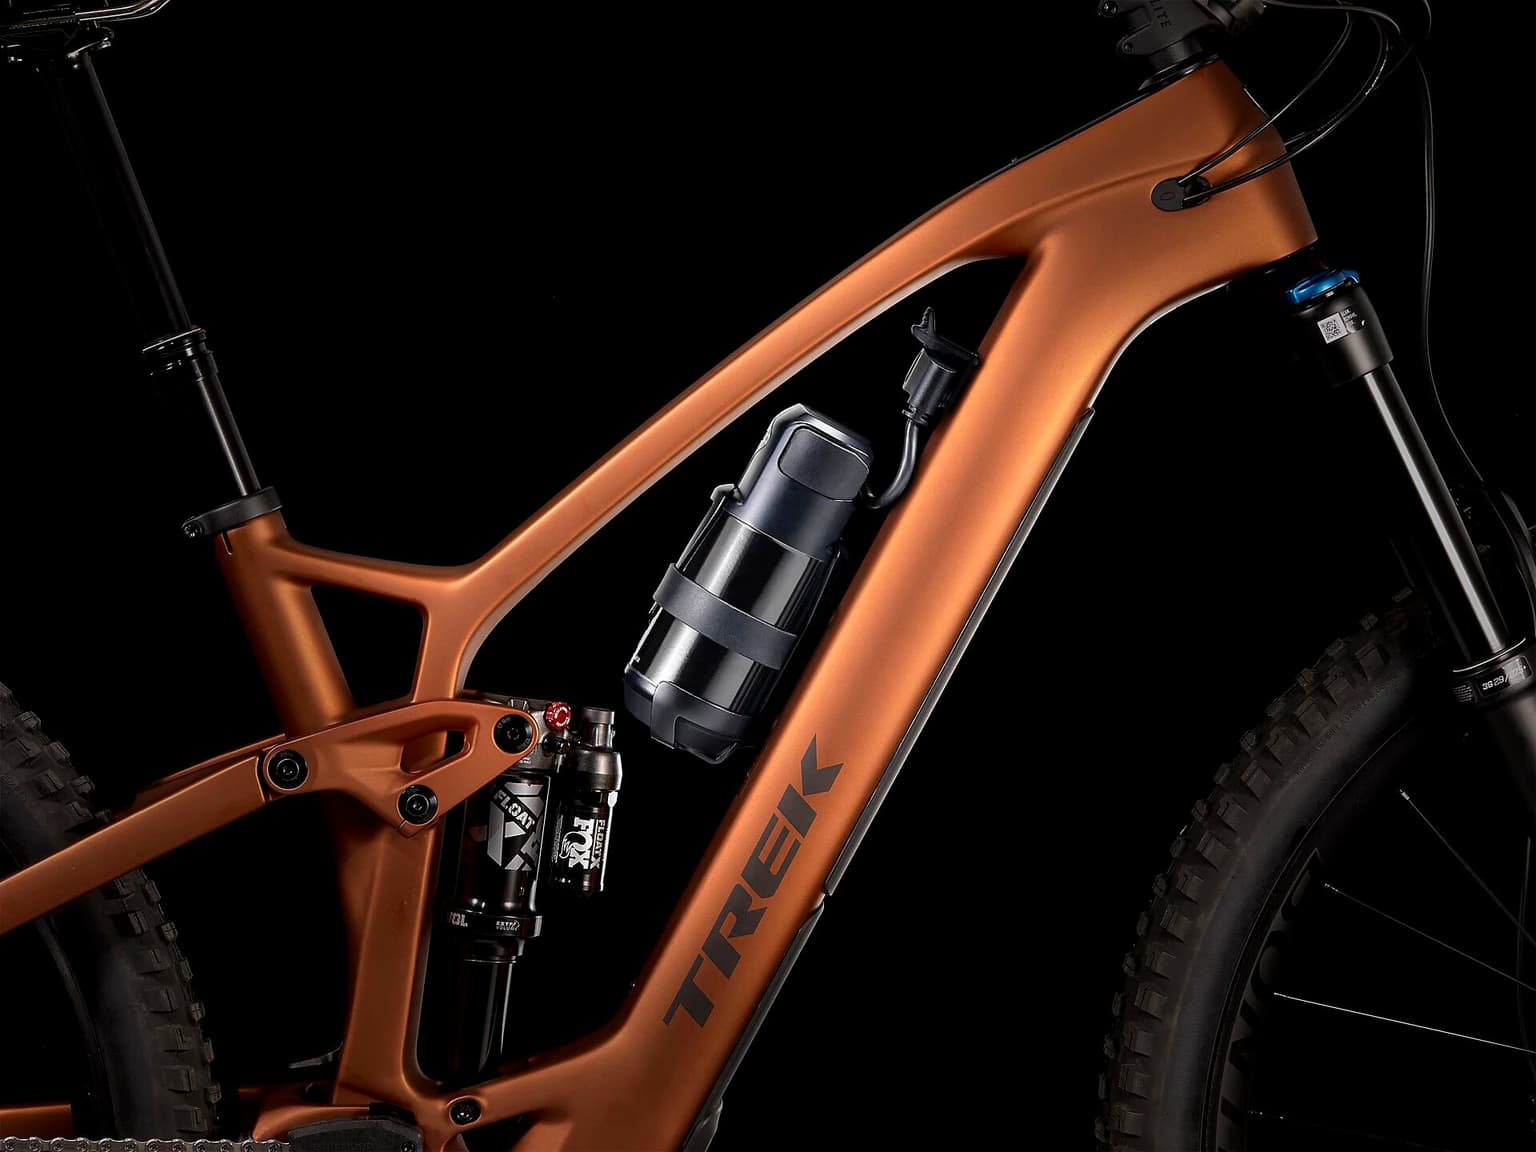 Trek Trek Fuel EXe 9.7 29 Mountain bike elettrica (Fully) arancio 12